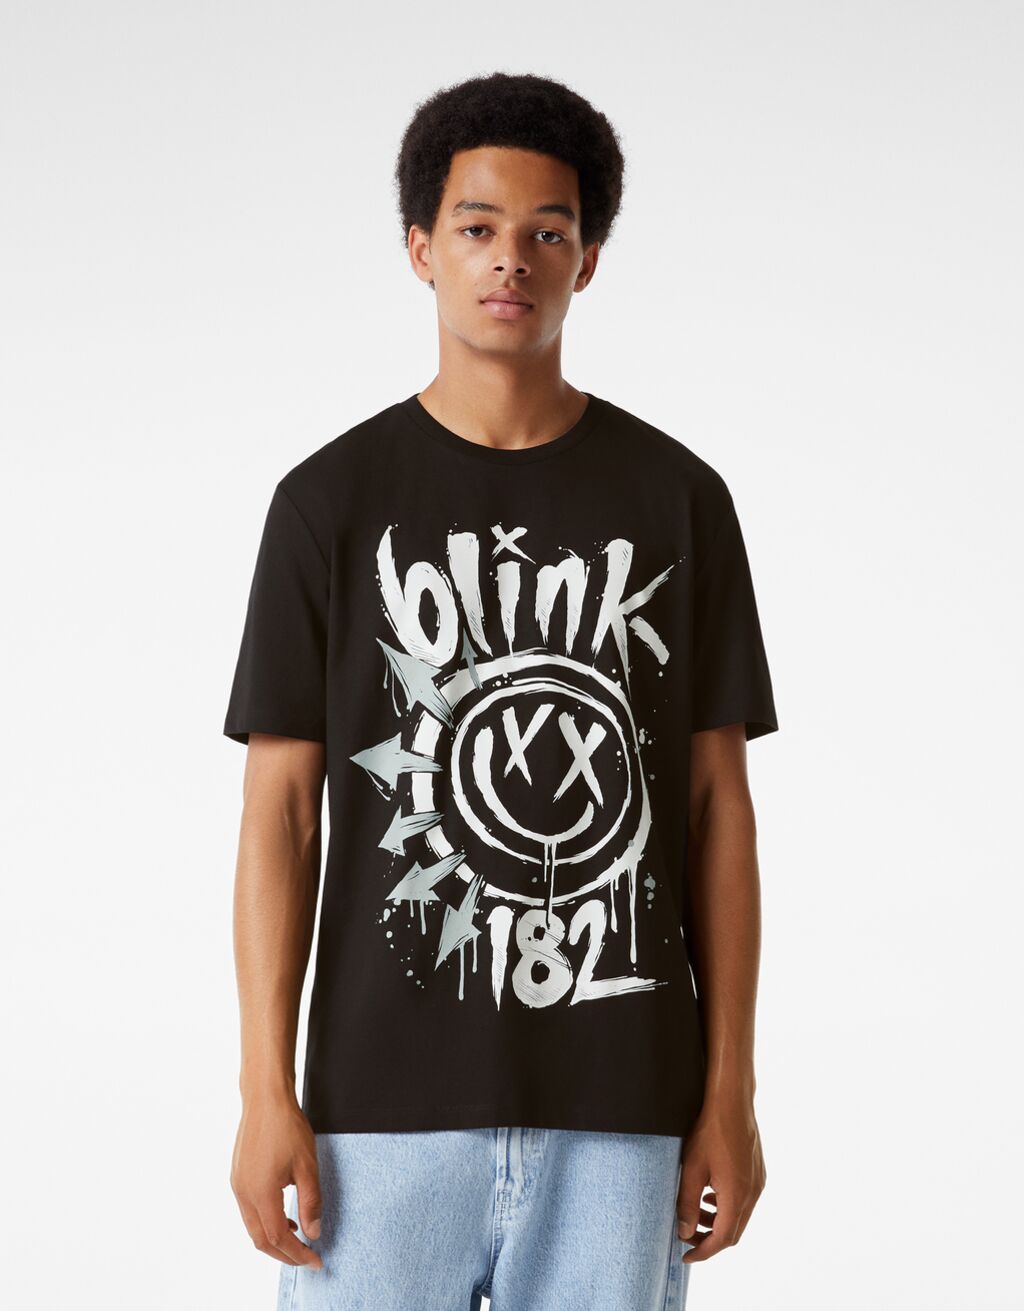 Normál szabású, rövid ujjú póló Blink 182-felirattal